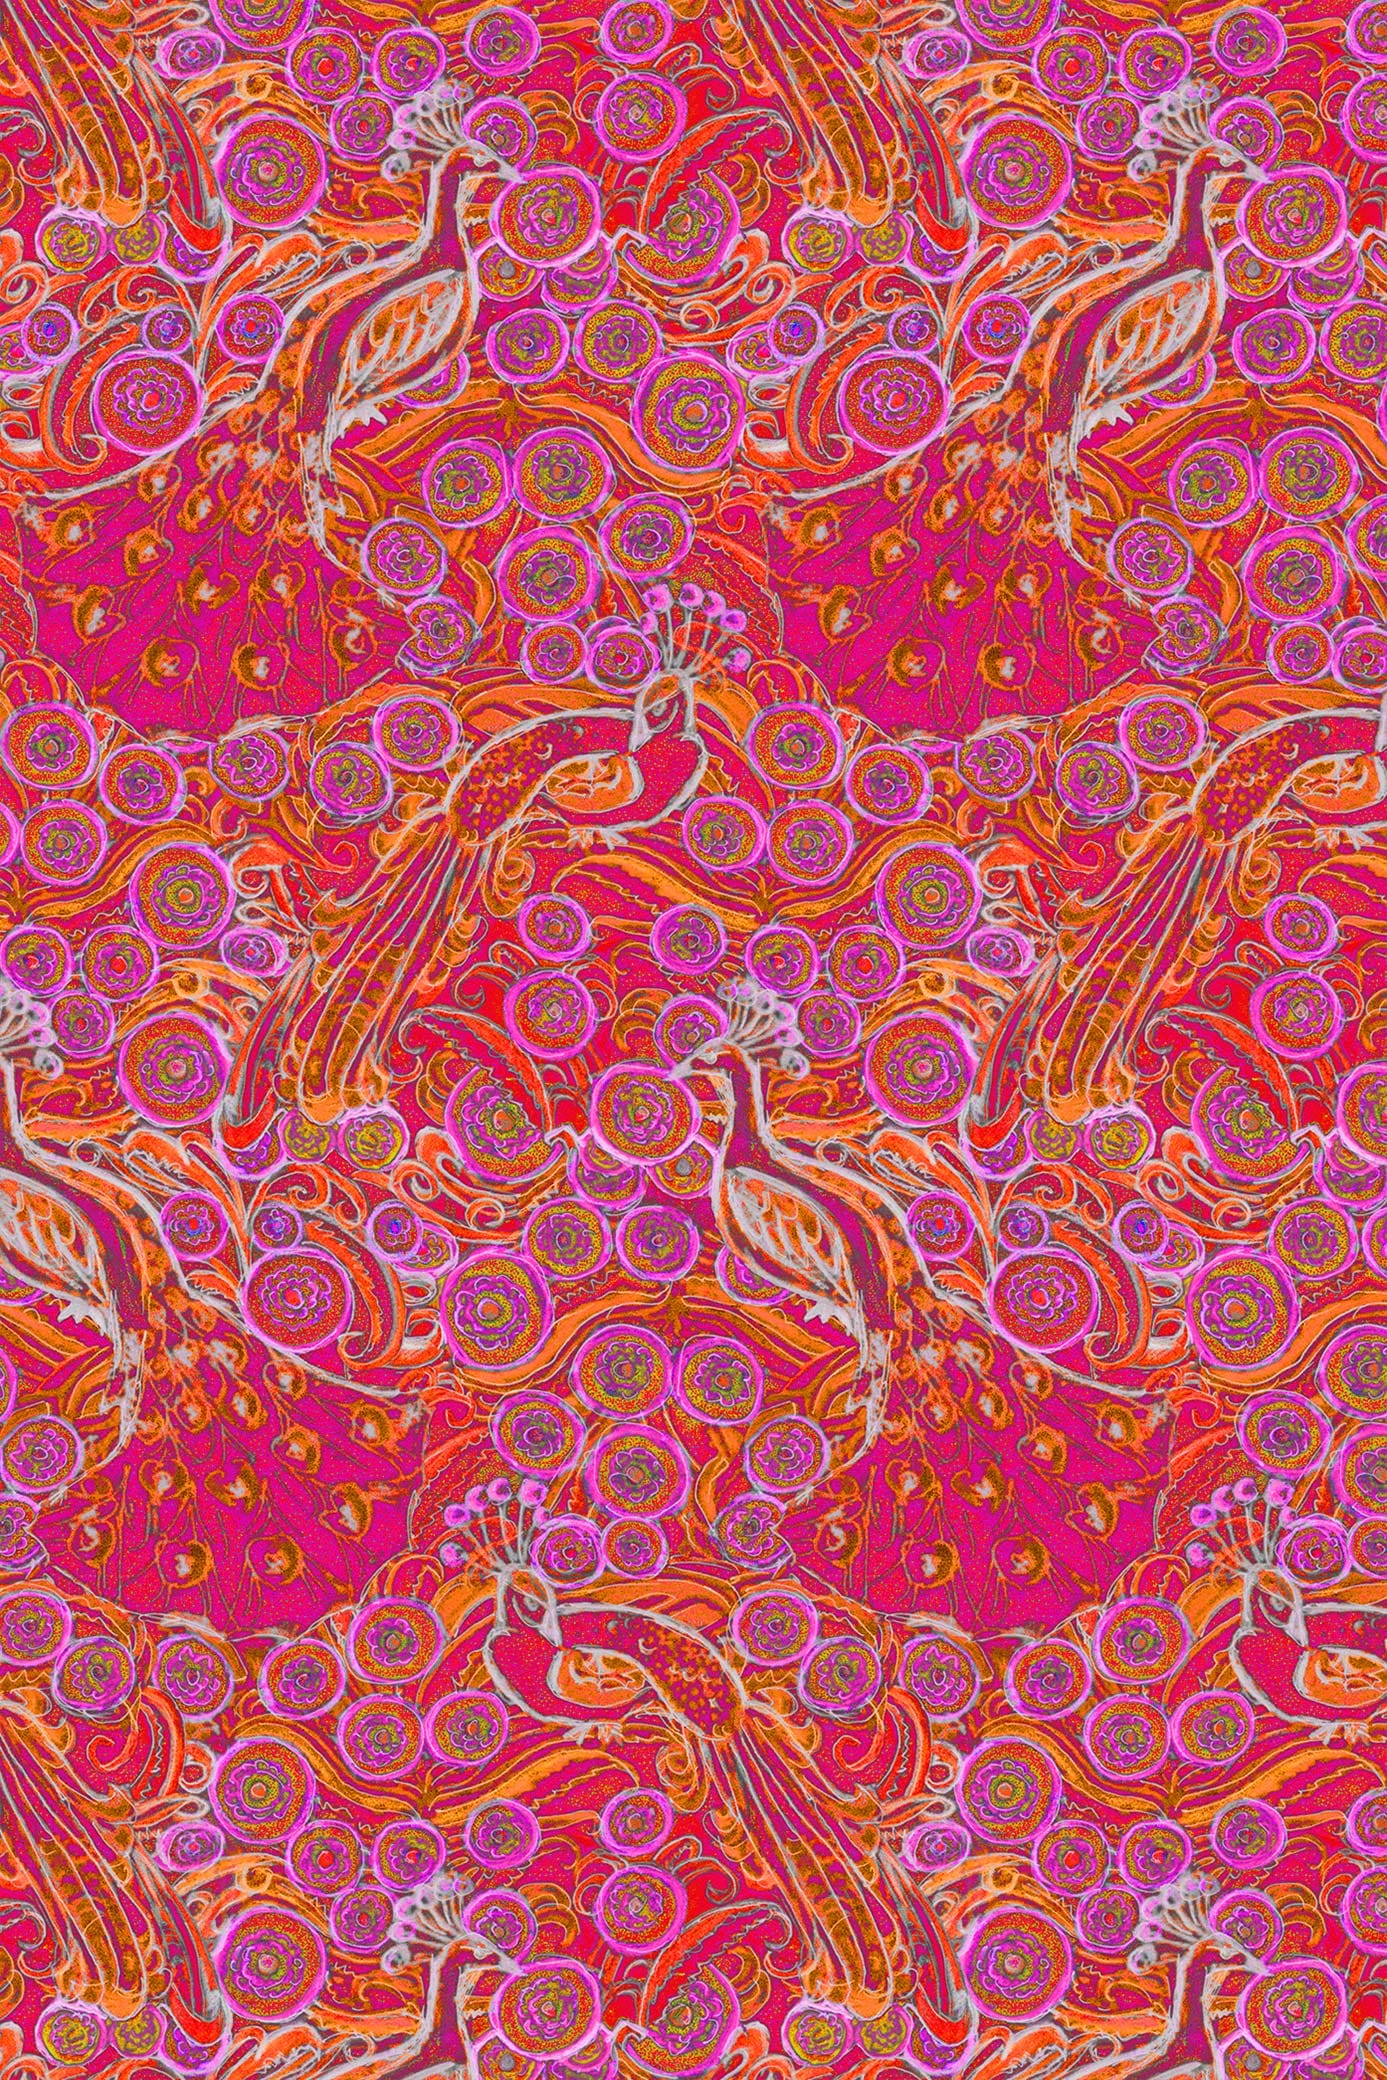 W.E.T. by Ines Schneider Blouse Blouse Elodie / Pavone mode hamburg print sommerkleid Unique Prints Summer Dress Handdesignierte Prints Print